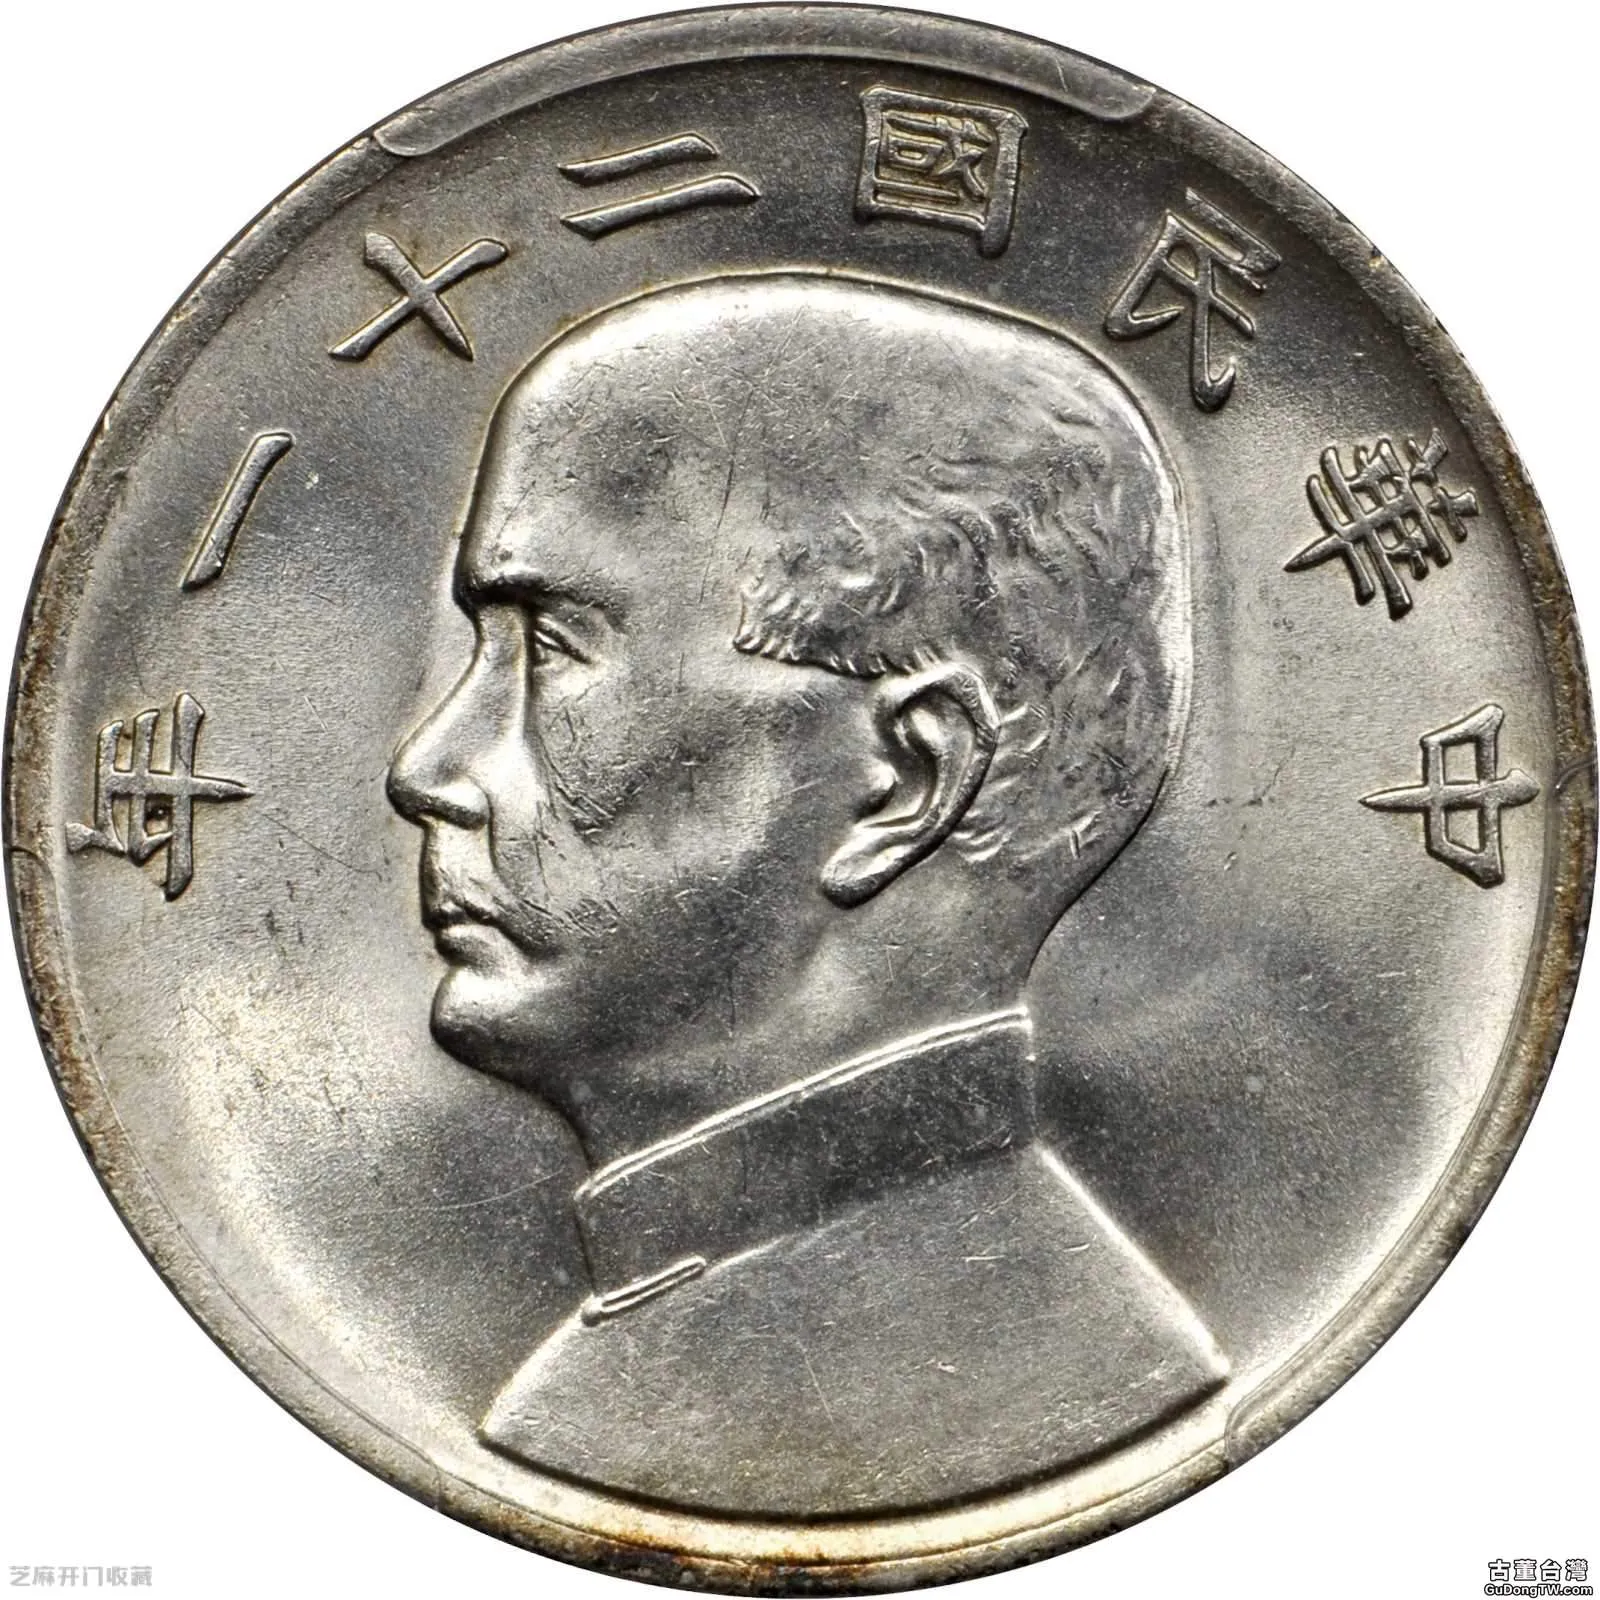 民國二十一年的金本位壹元銀幣有幾種版別